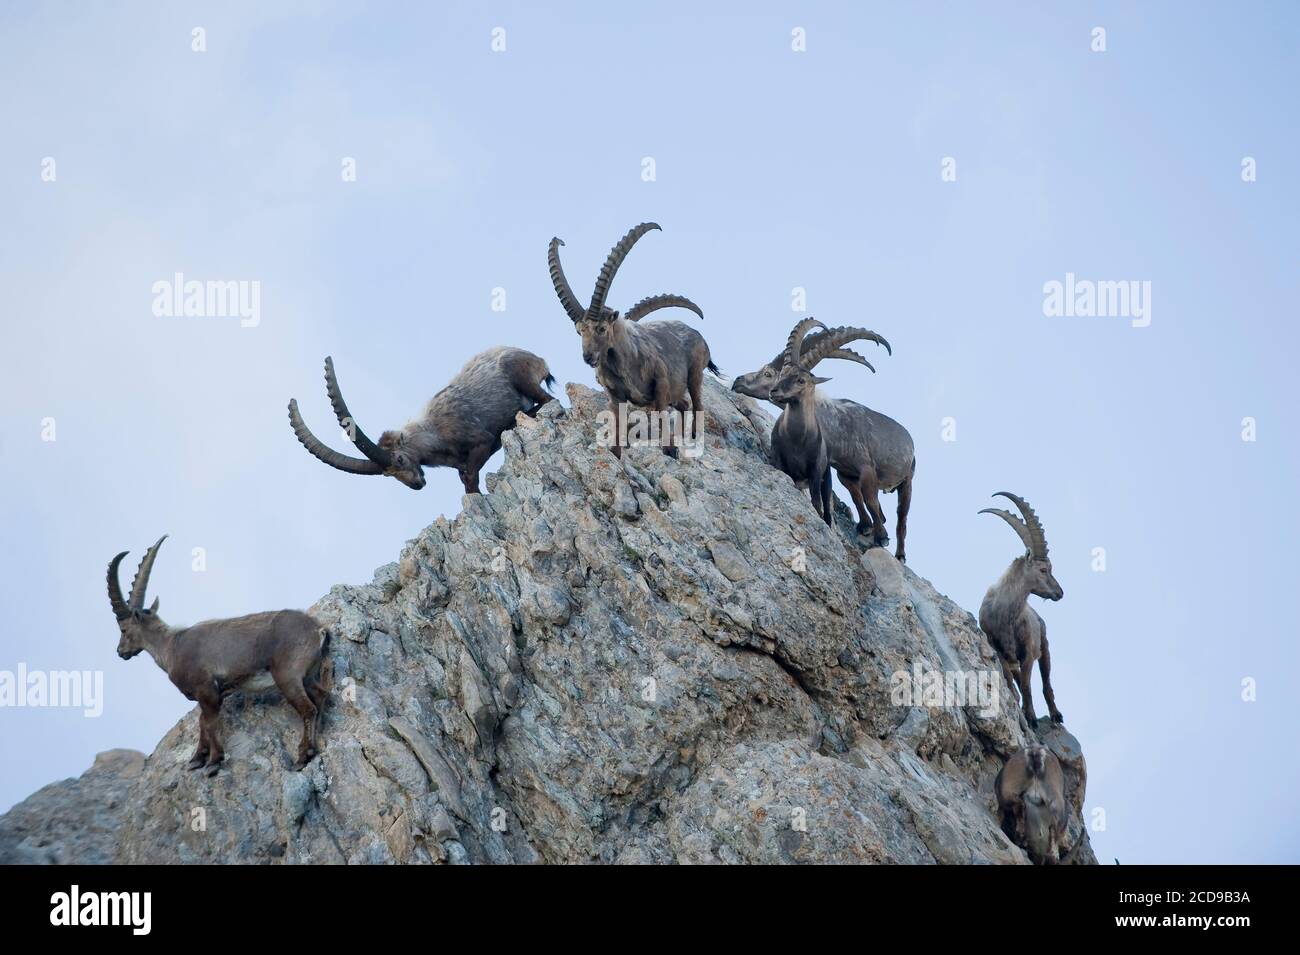 Frankreich, Savoie, Beaufortain-Massiv, alpine Tierwelt, Gruppe von alten männlichen Steinböcken zur Presset-Hütte Stockfoto